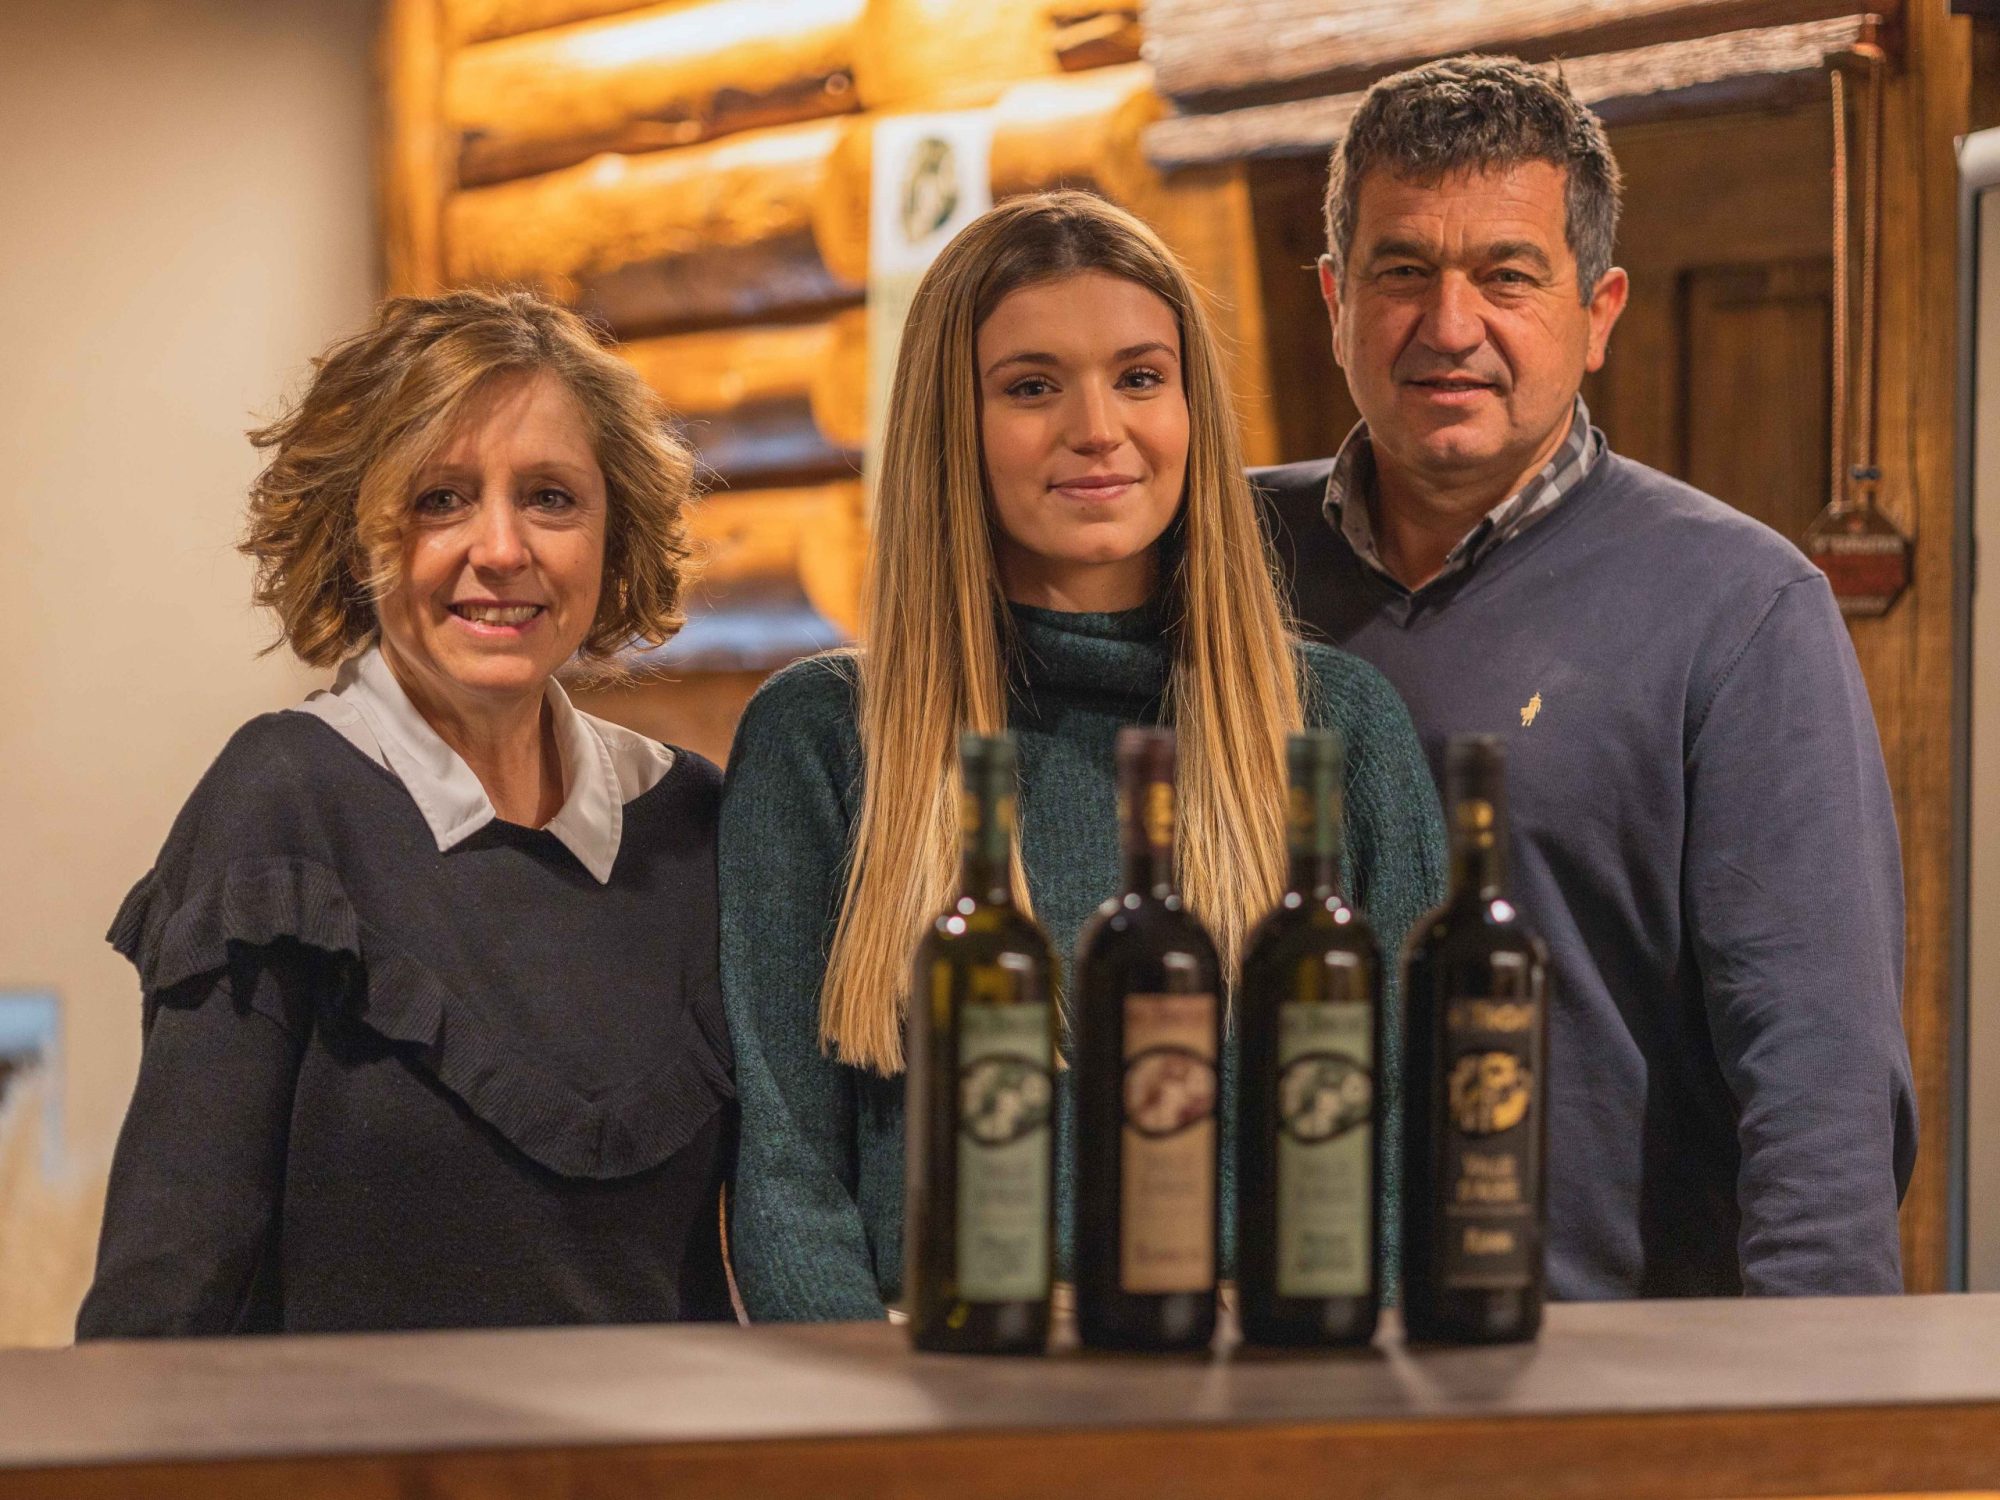 La famiglia Lo Triolet e i loro vini della Valle d'Aosta